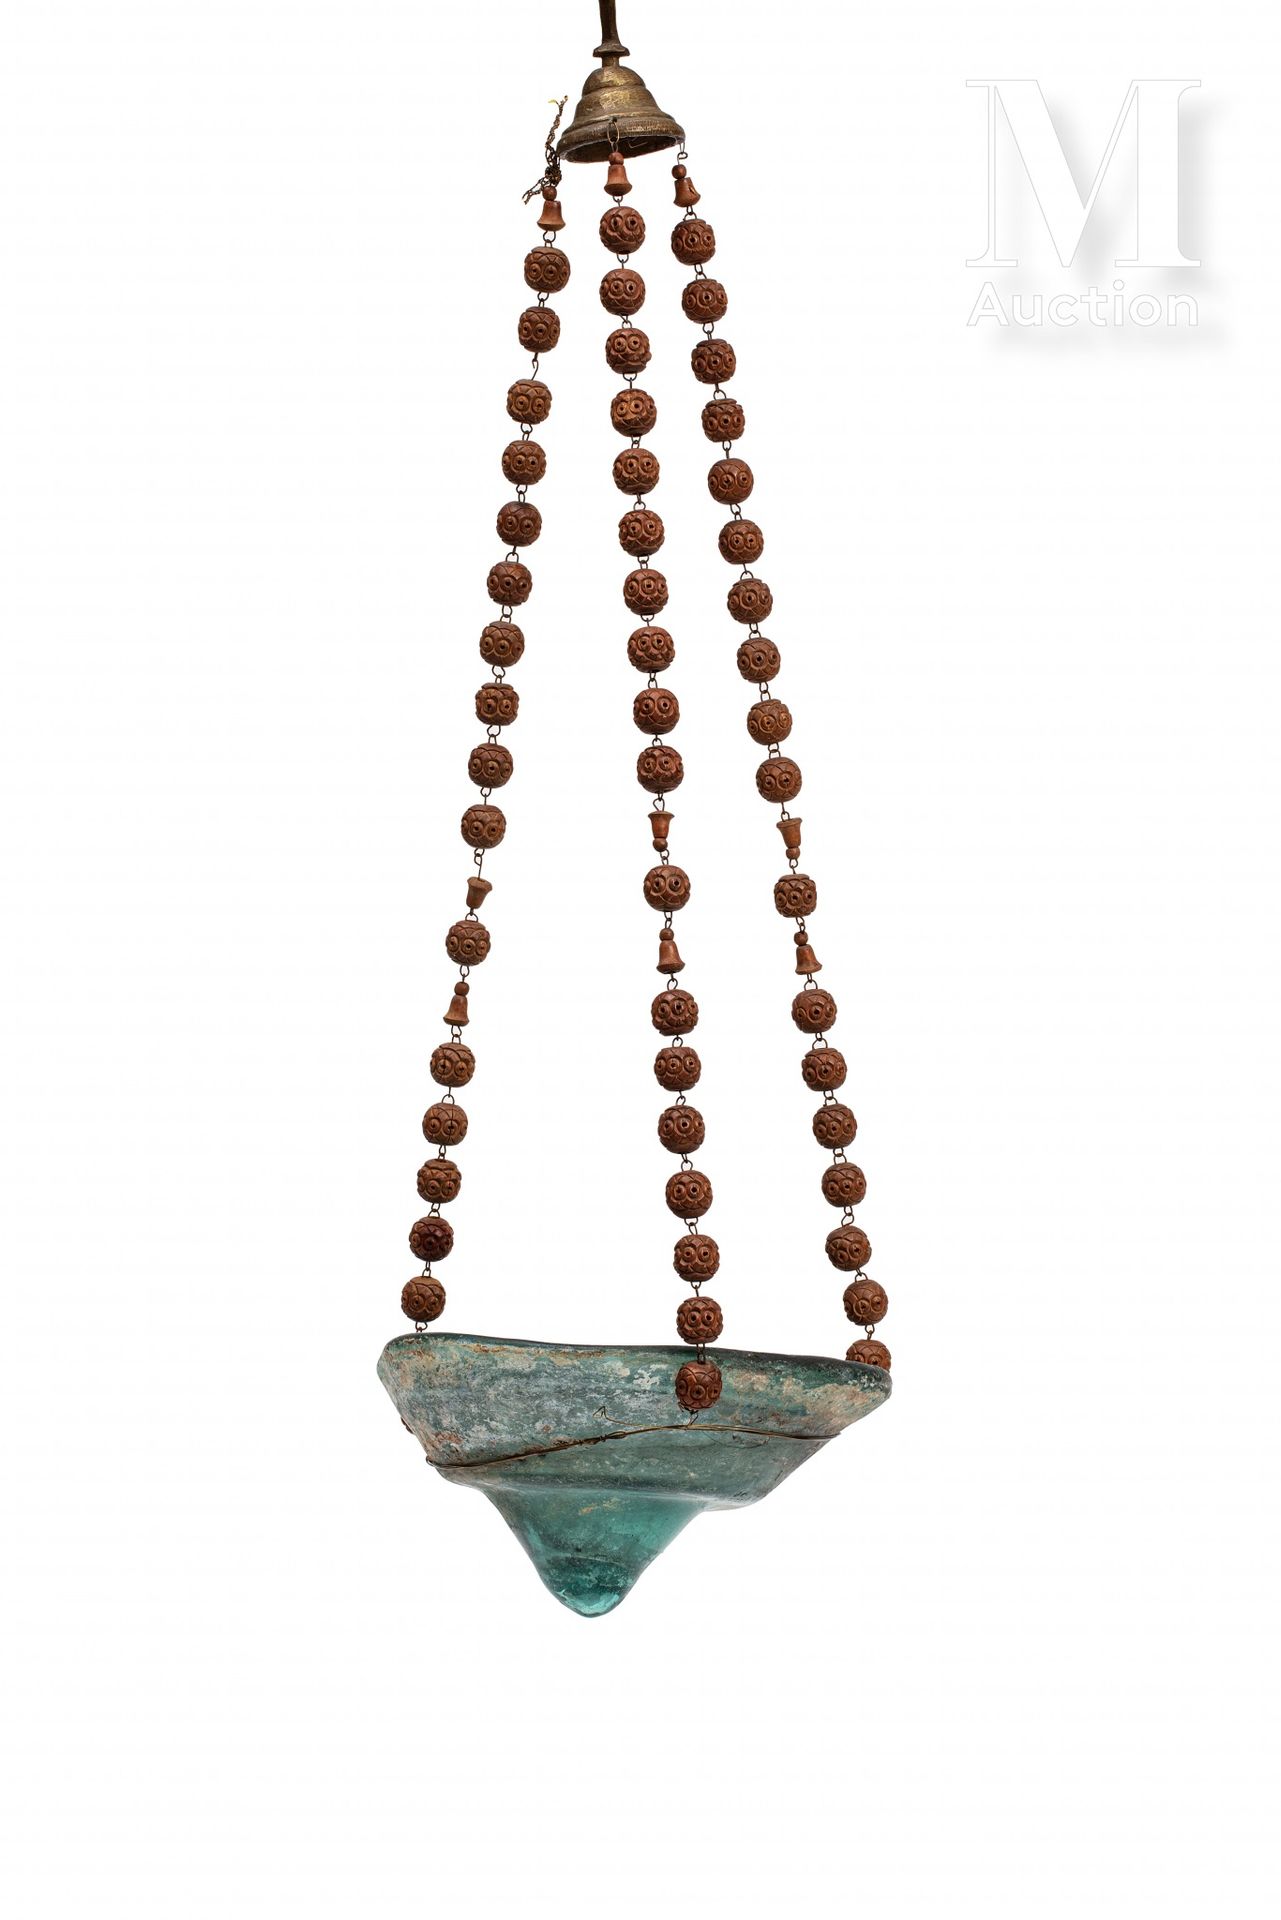 Lampe à huile Mesopotamia o Vicino Oriente, 8°-10° secolo

Un vetro modellato co&hellip;